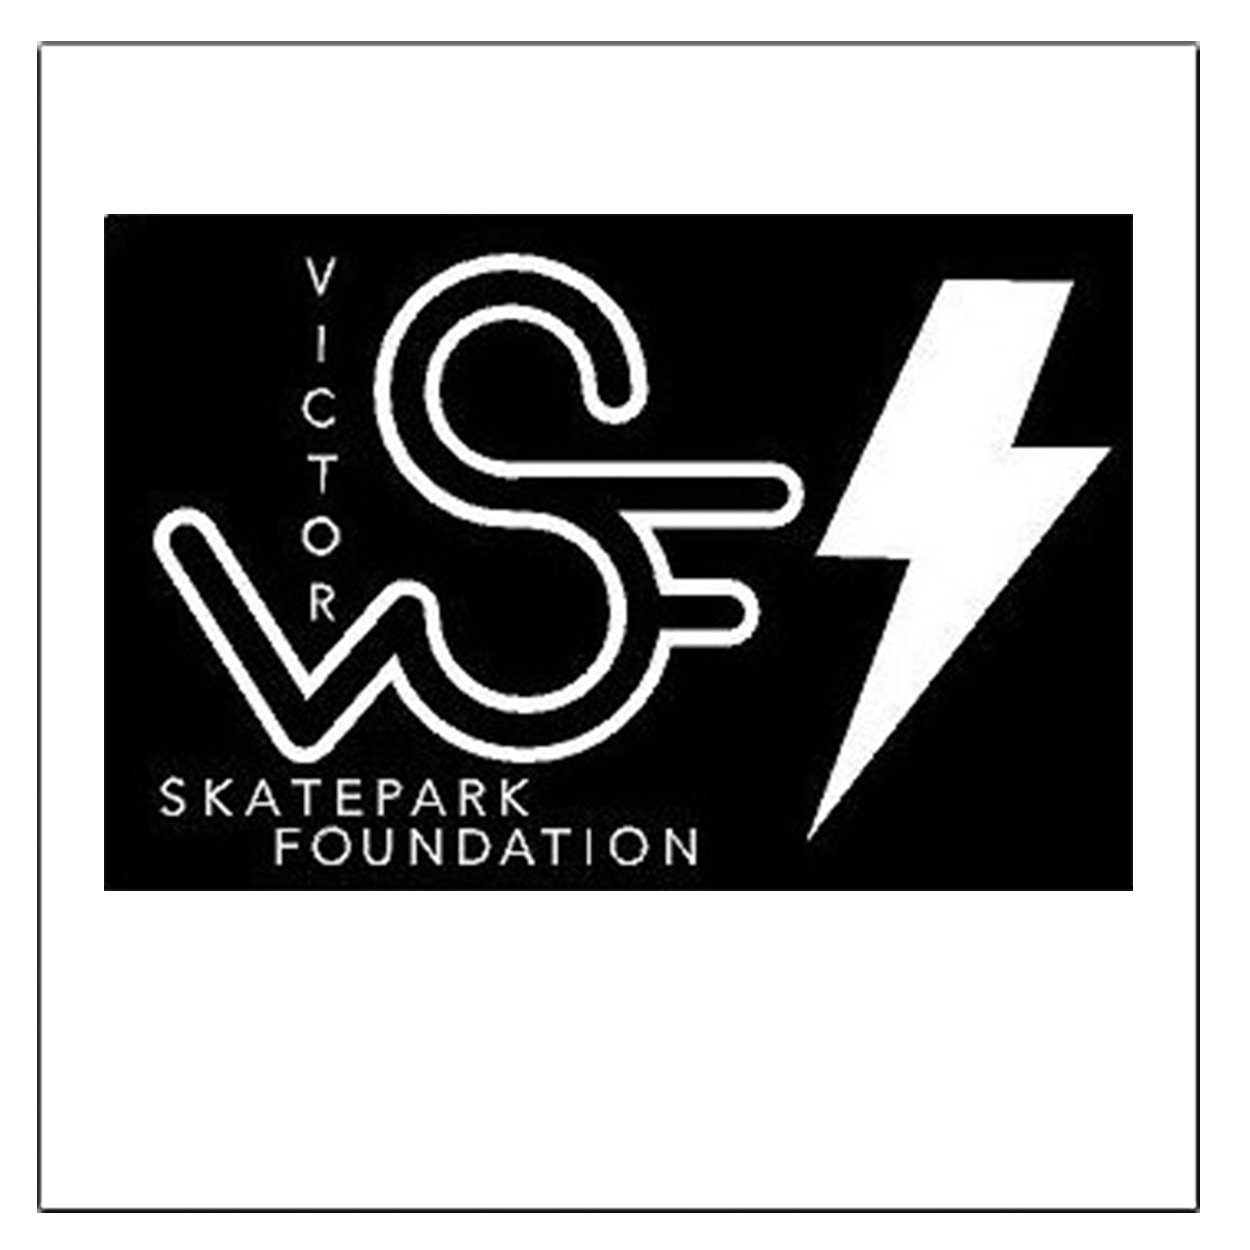 Victor Skate Park Foundation